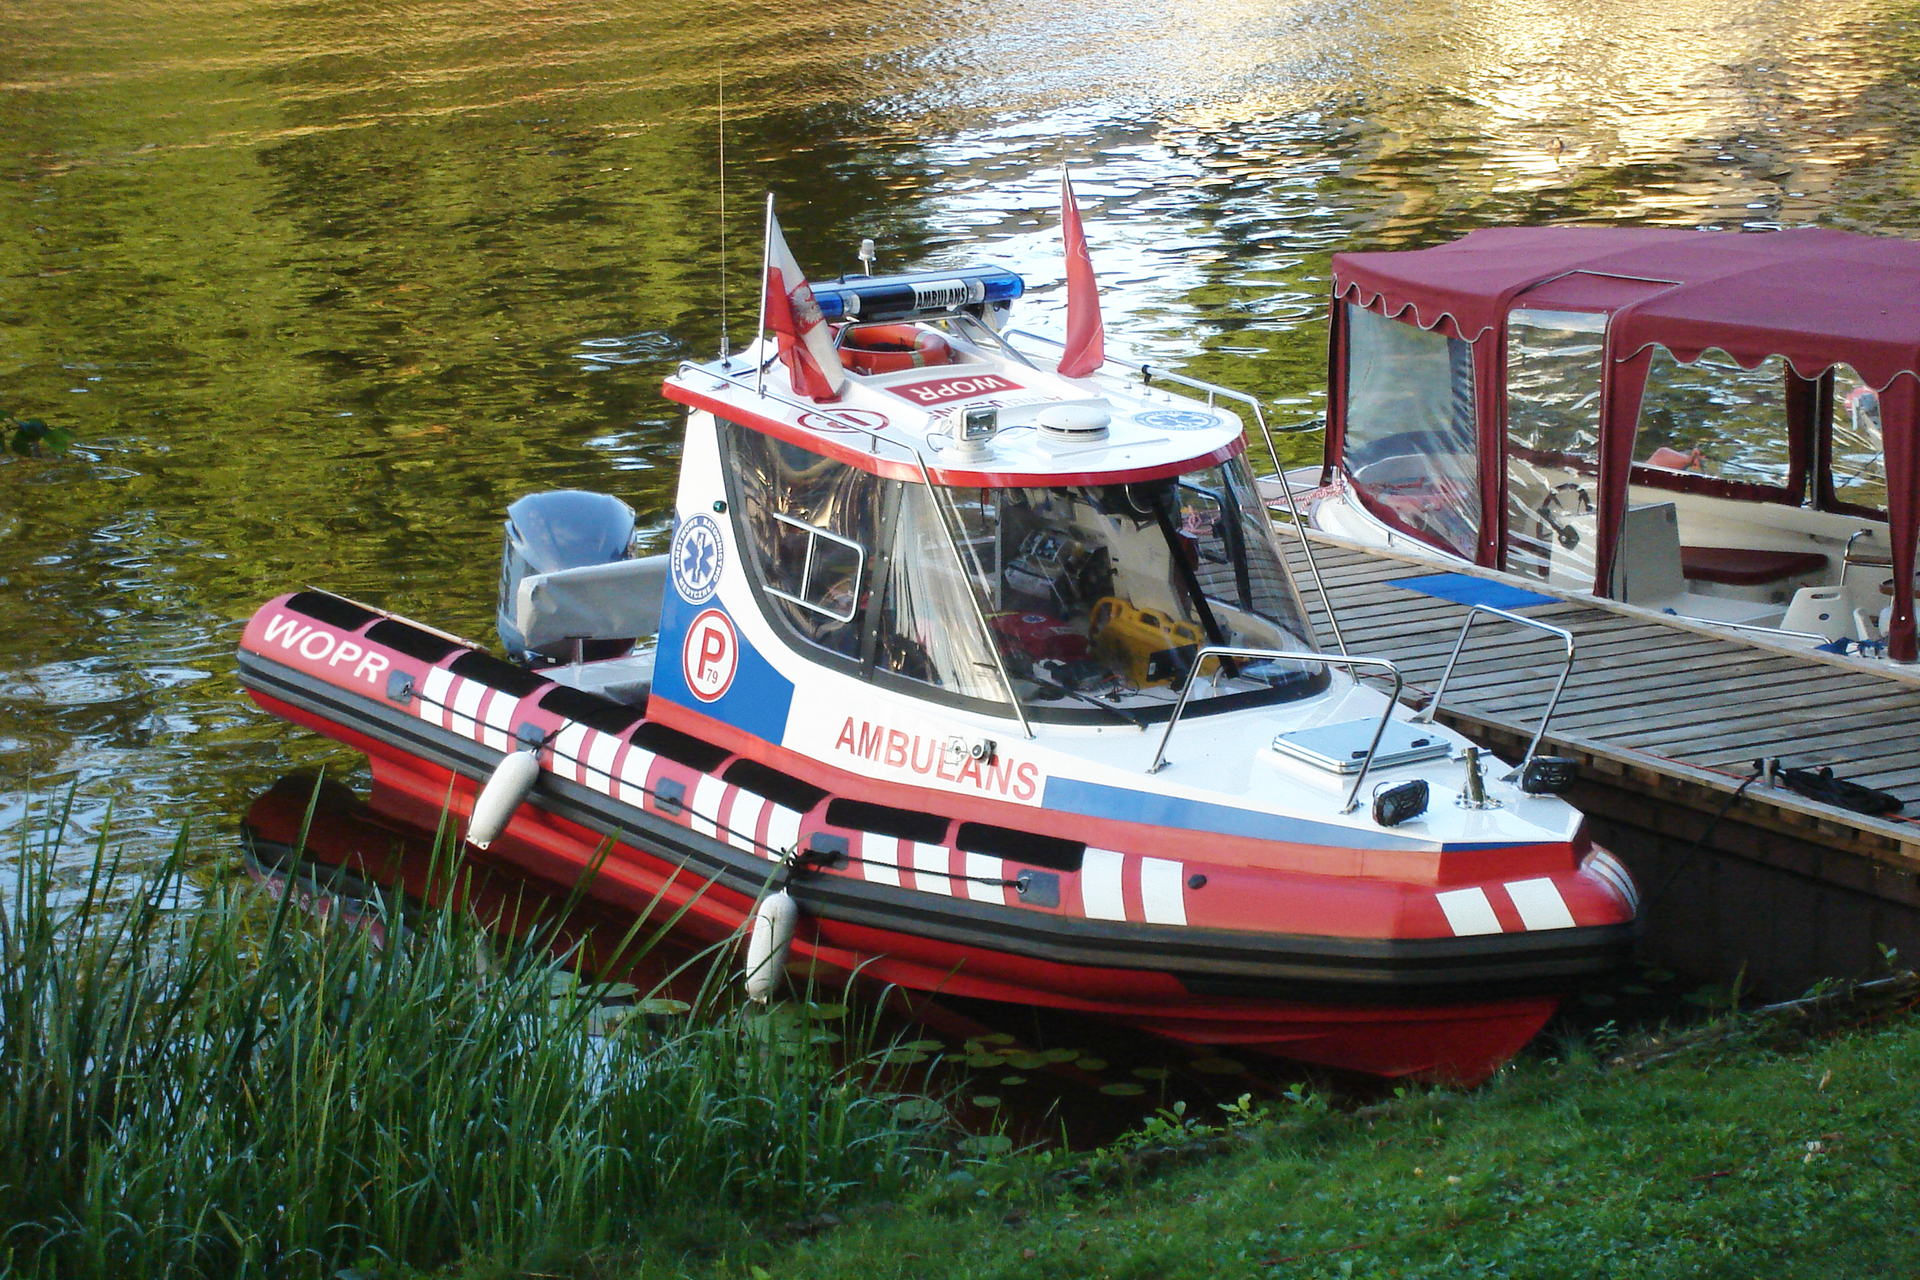 Drugie zdjęcie na prawo to mała łódź ratunkowa WOPR. Łódź przycumowana do brzegu. Kabina kapitana oszklona. Za kabiną dwa miejsca siedzące. Na dachu kabiny dwie biało-czerwone flagi.